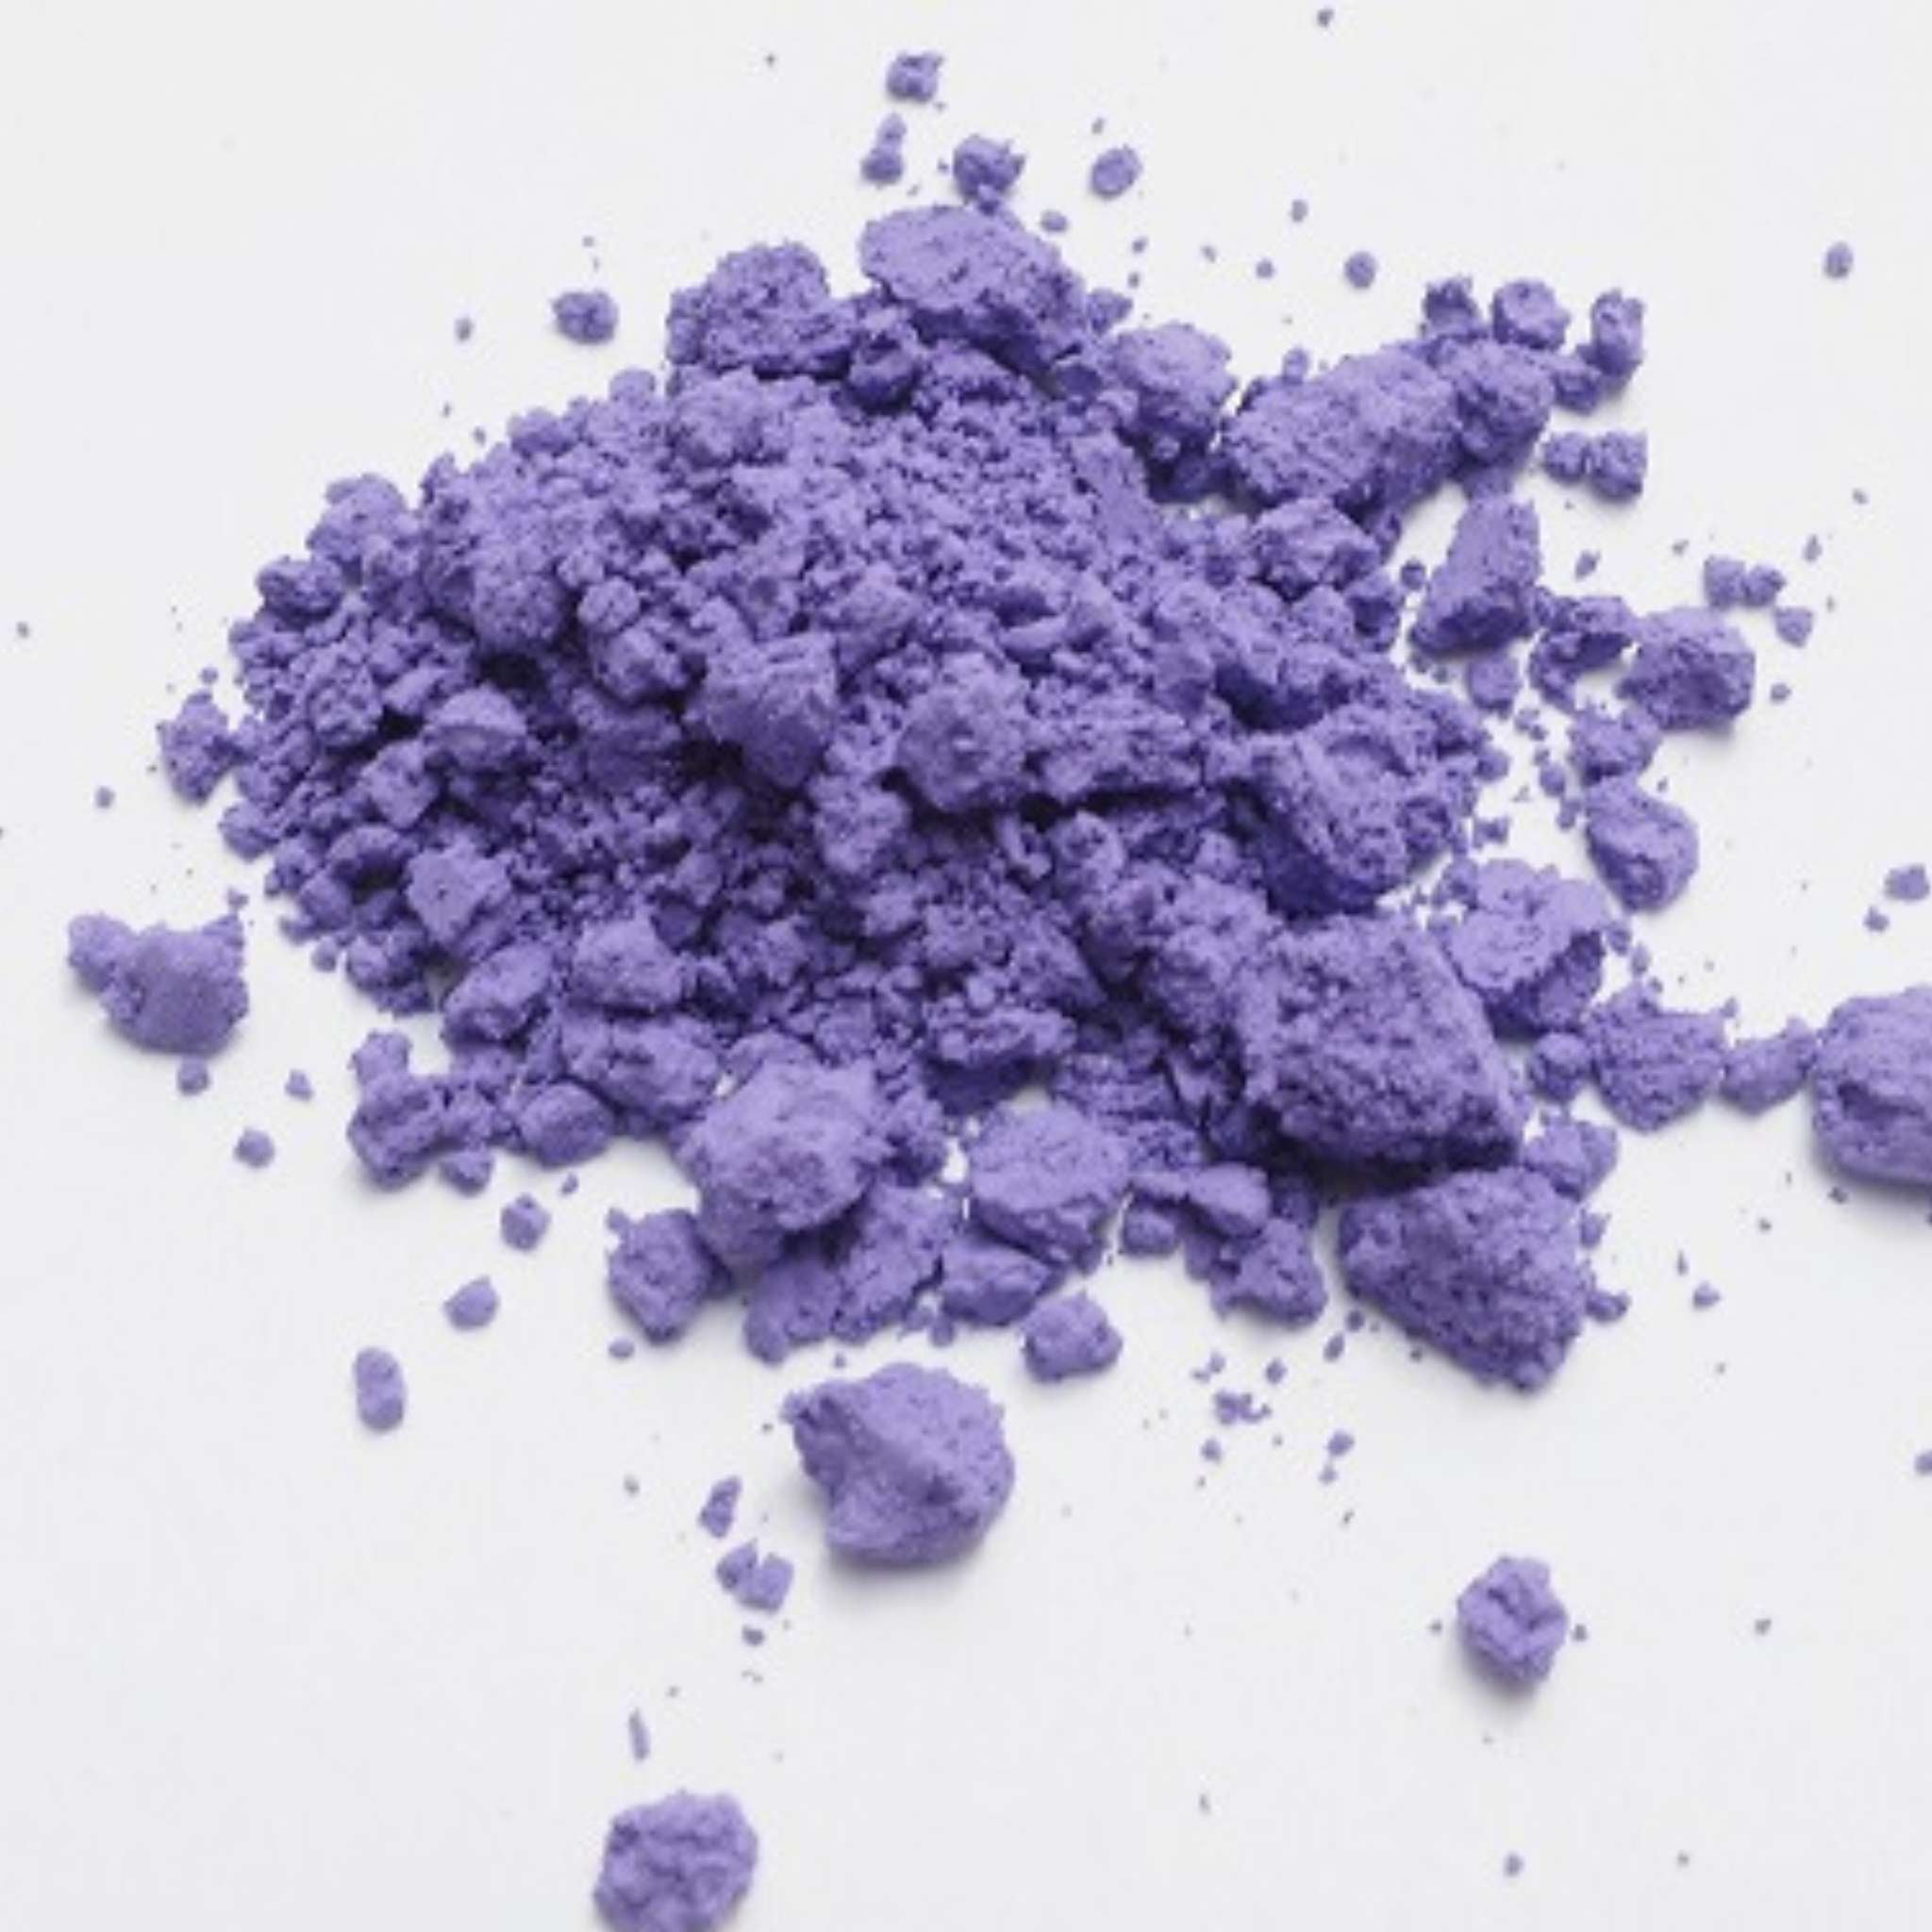 Ultramarine  Violett, blauer Unterton